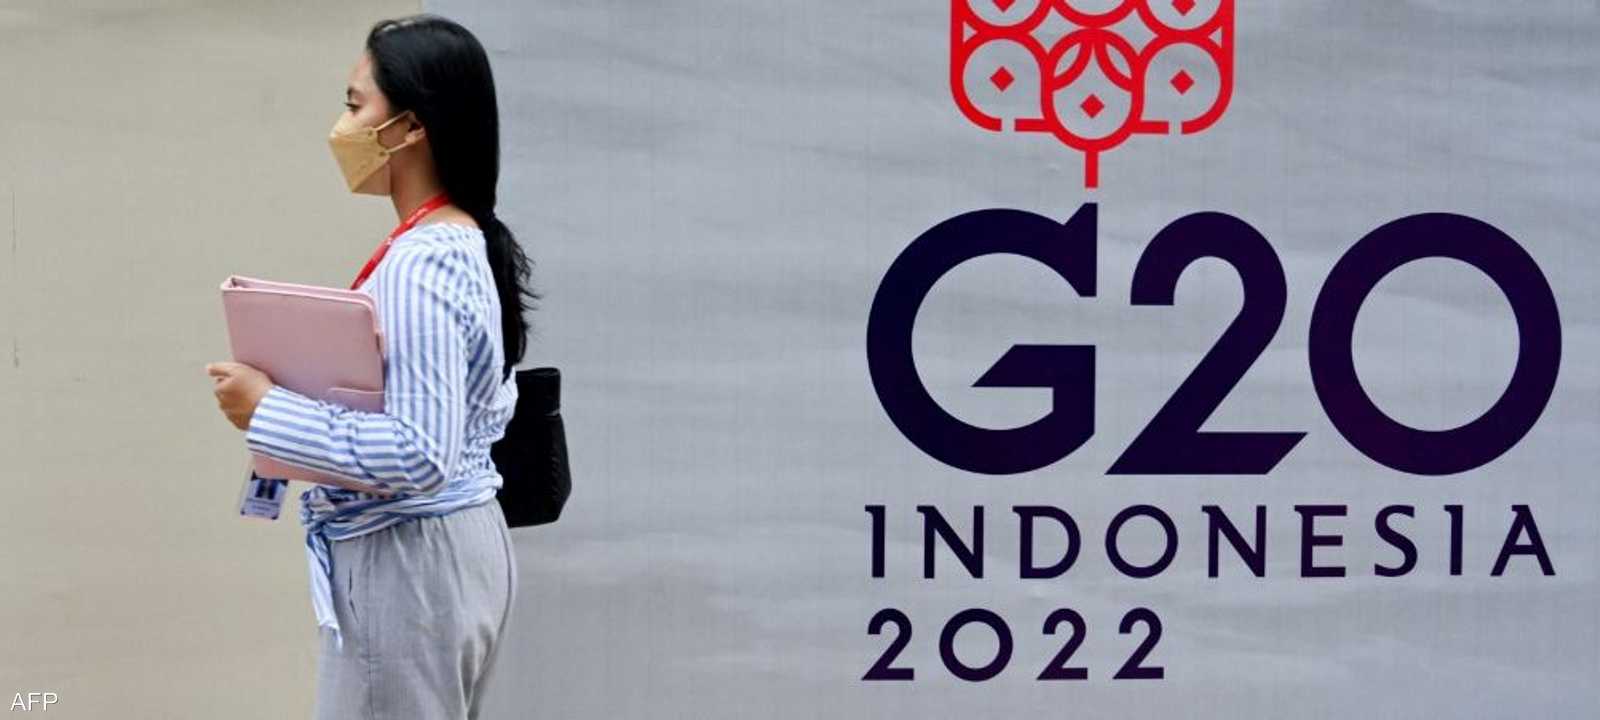 تستضيف بالي الإندونيسية قمة مجموعة العشرين